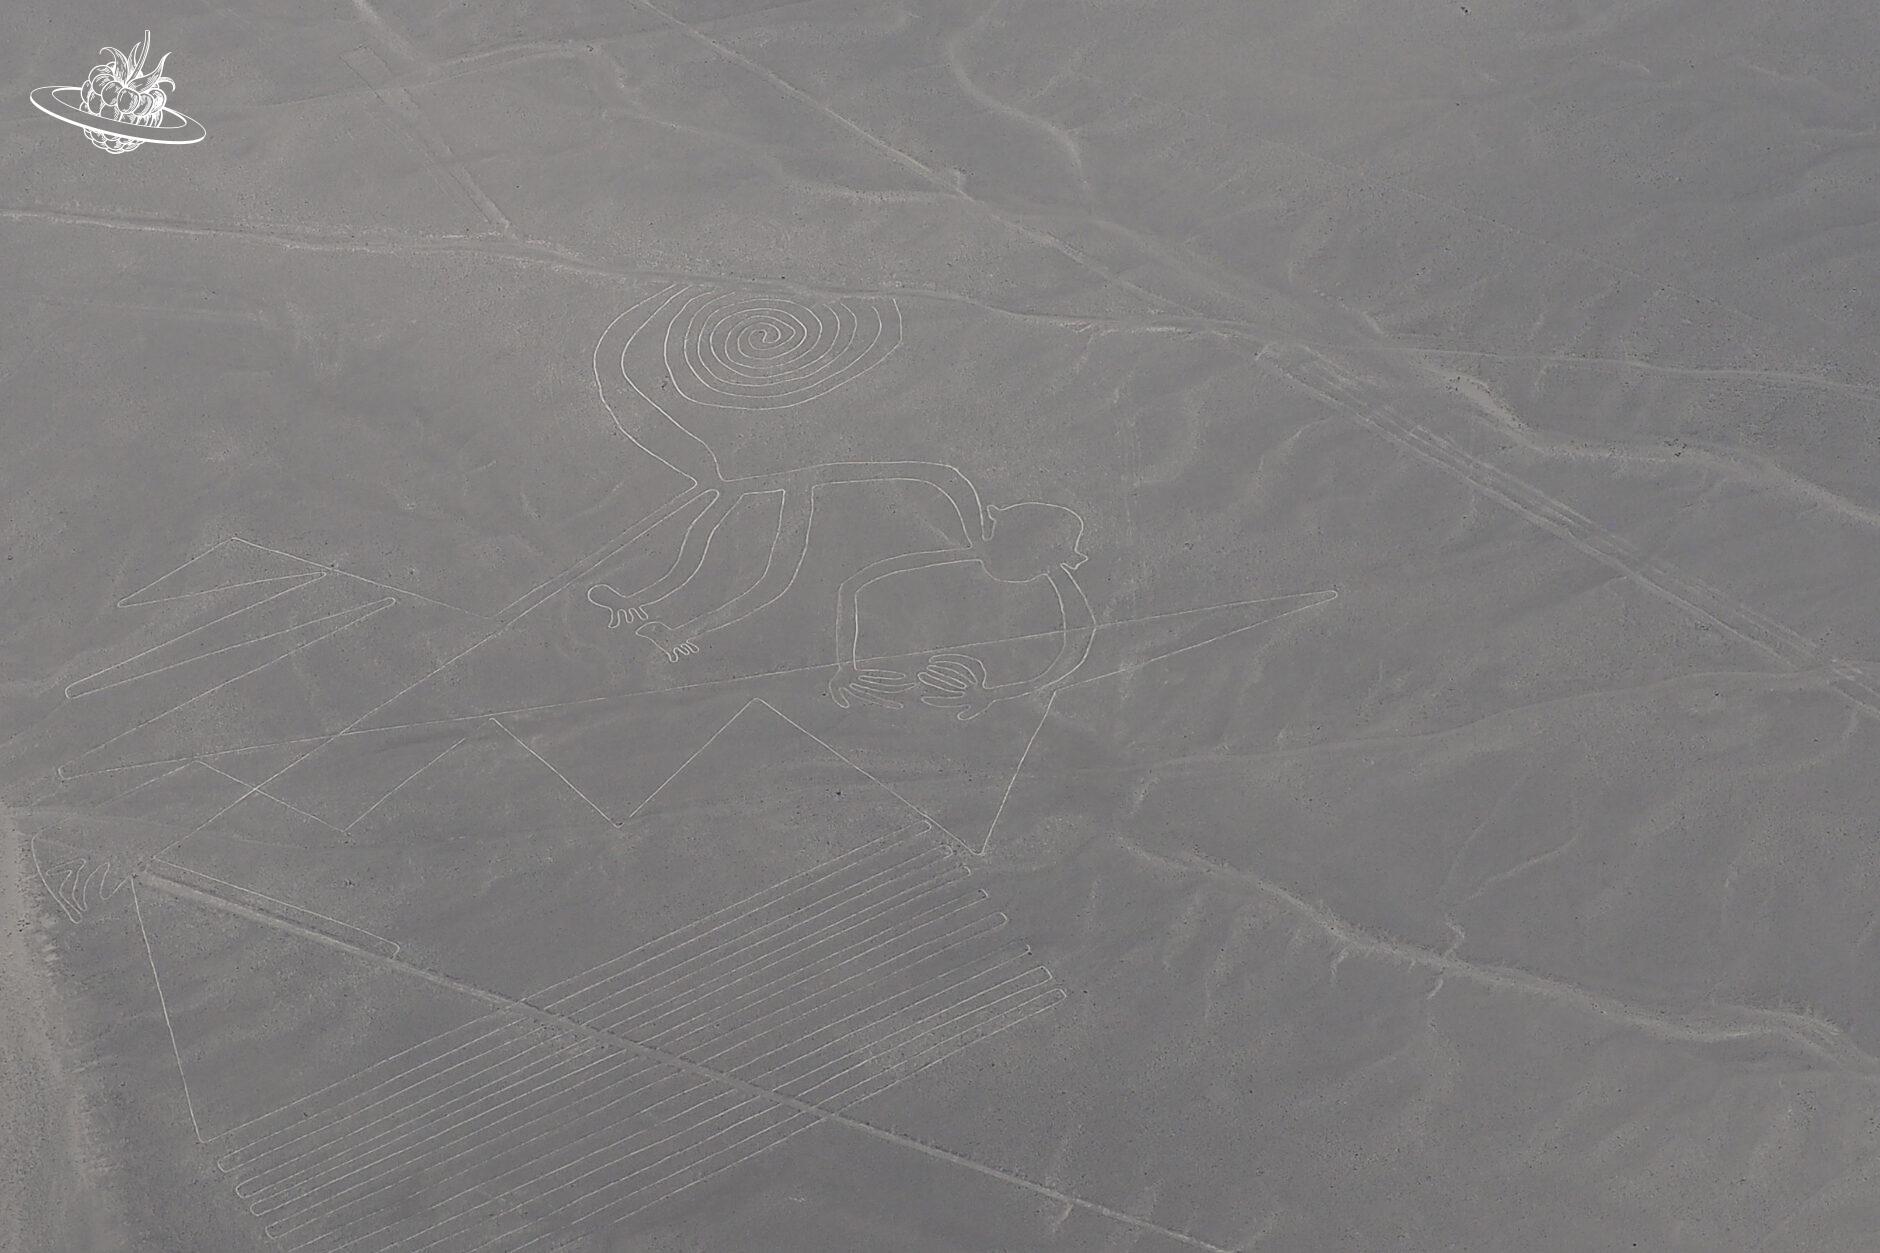 Die Figur "Affe" in der Wüste von Nazca